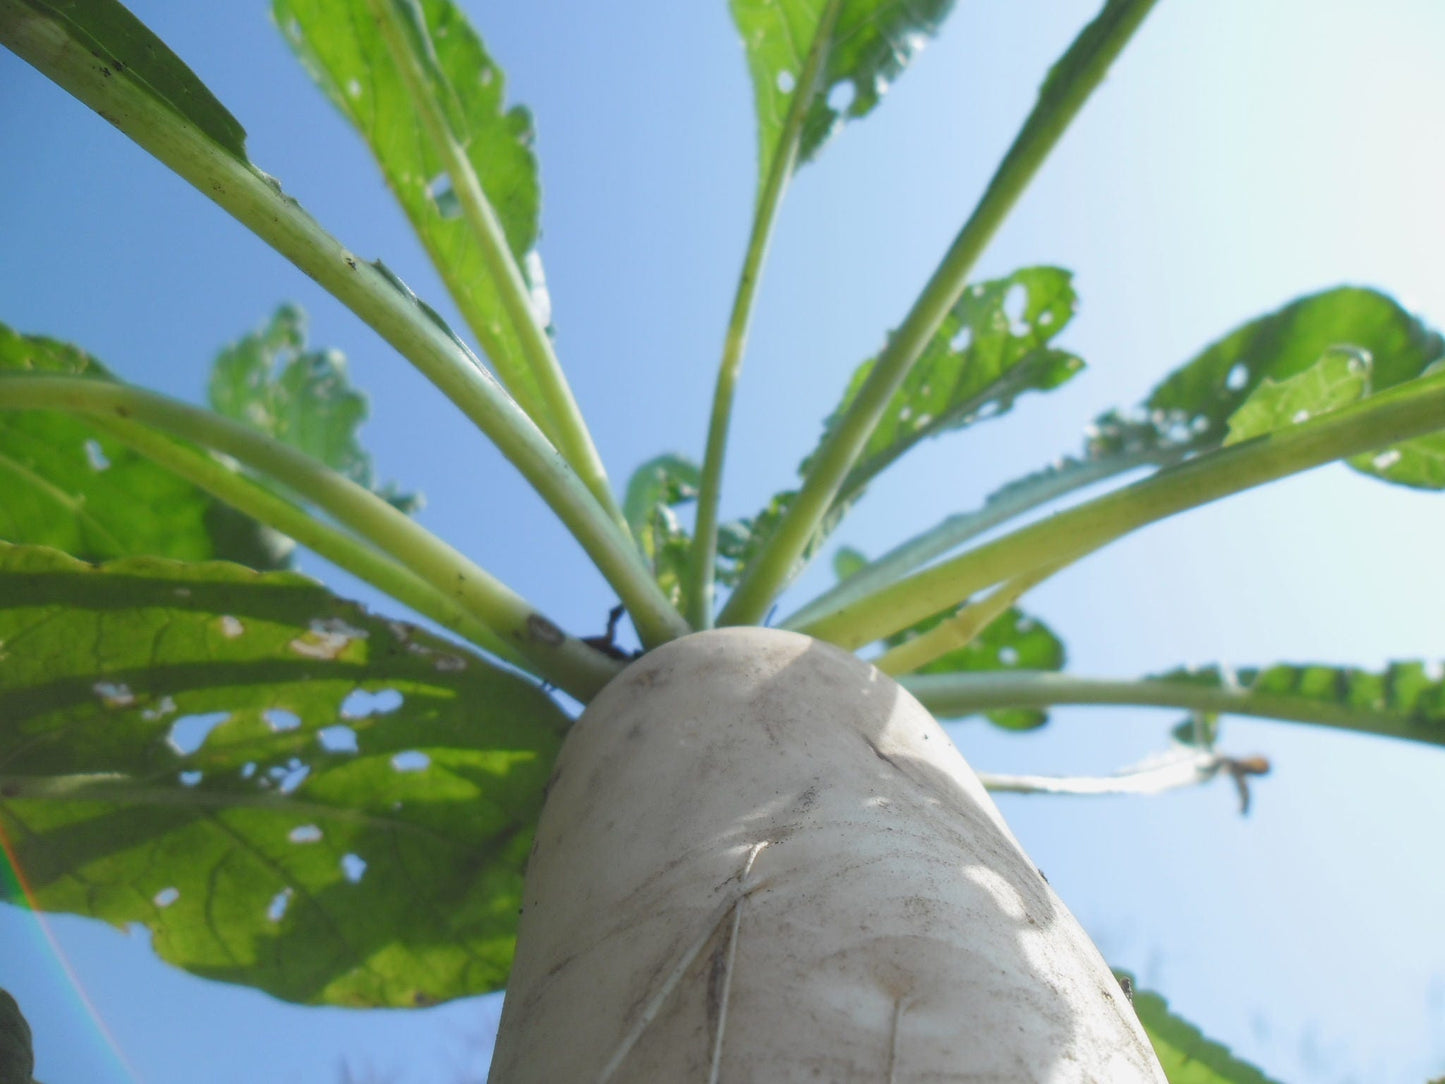 500 JAPANESE MINOWASE RADISH Huge Daikon White Raphanus Sativus Vegetable Seeds